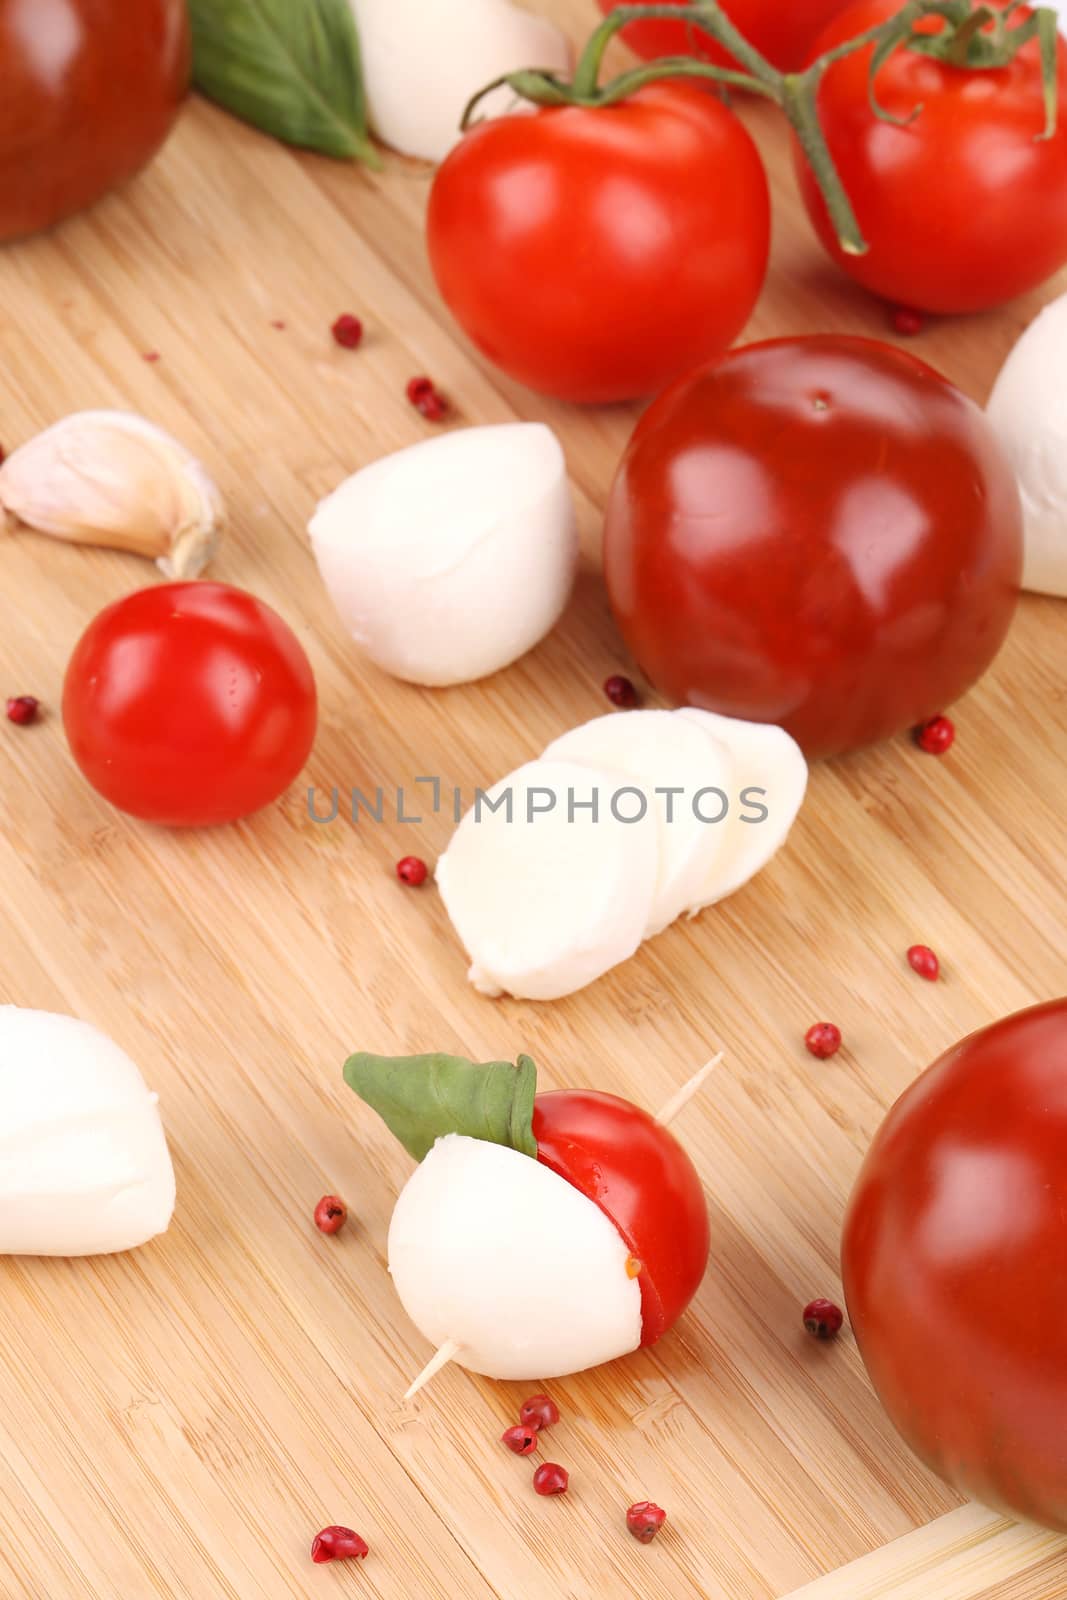 Tomatoes and mozzarella balls. by indigolotos